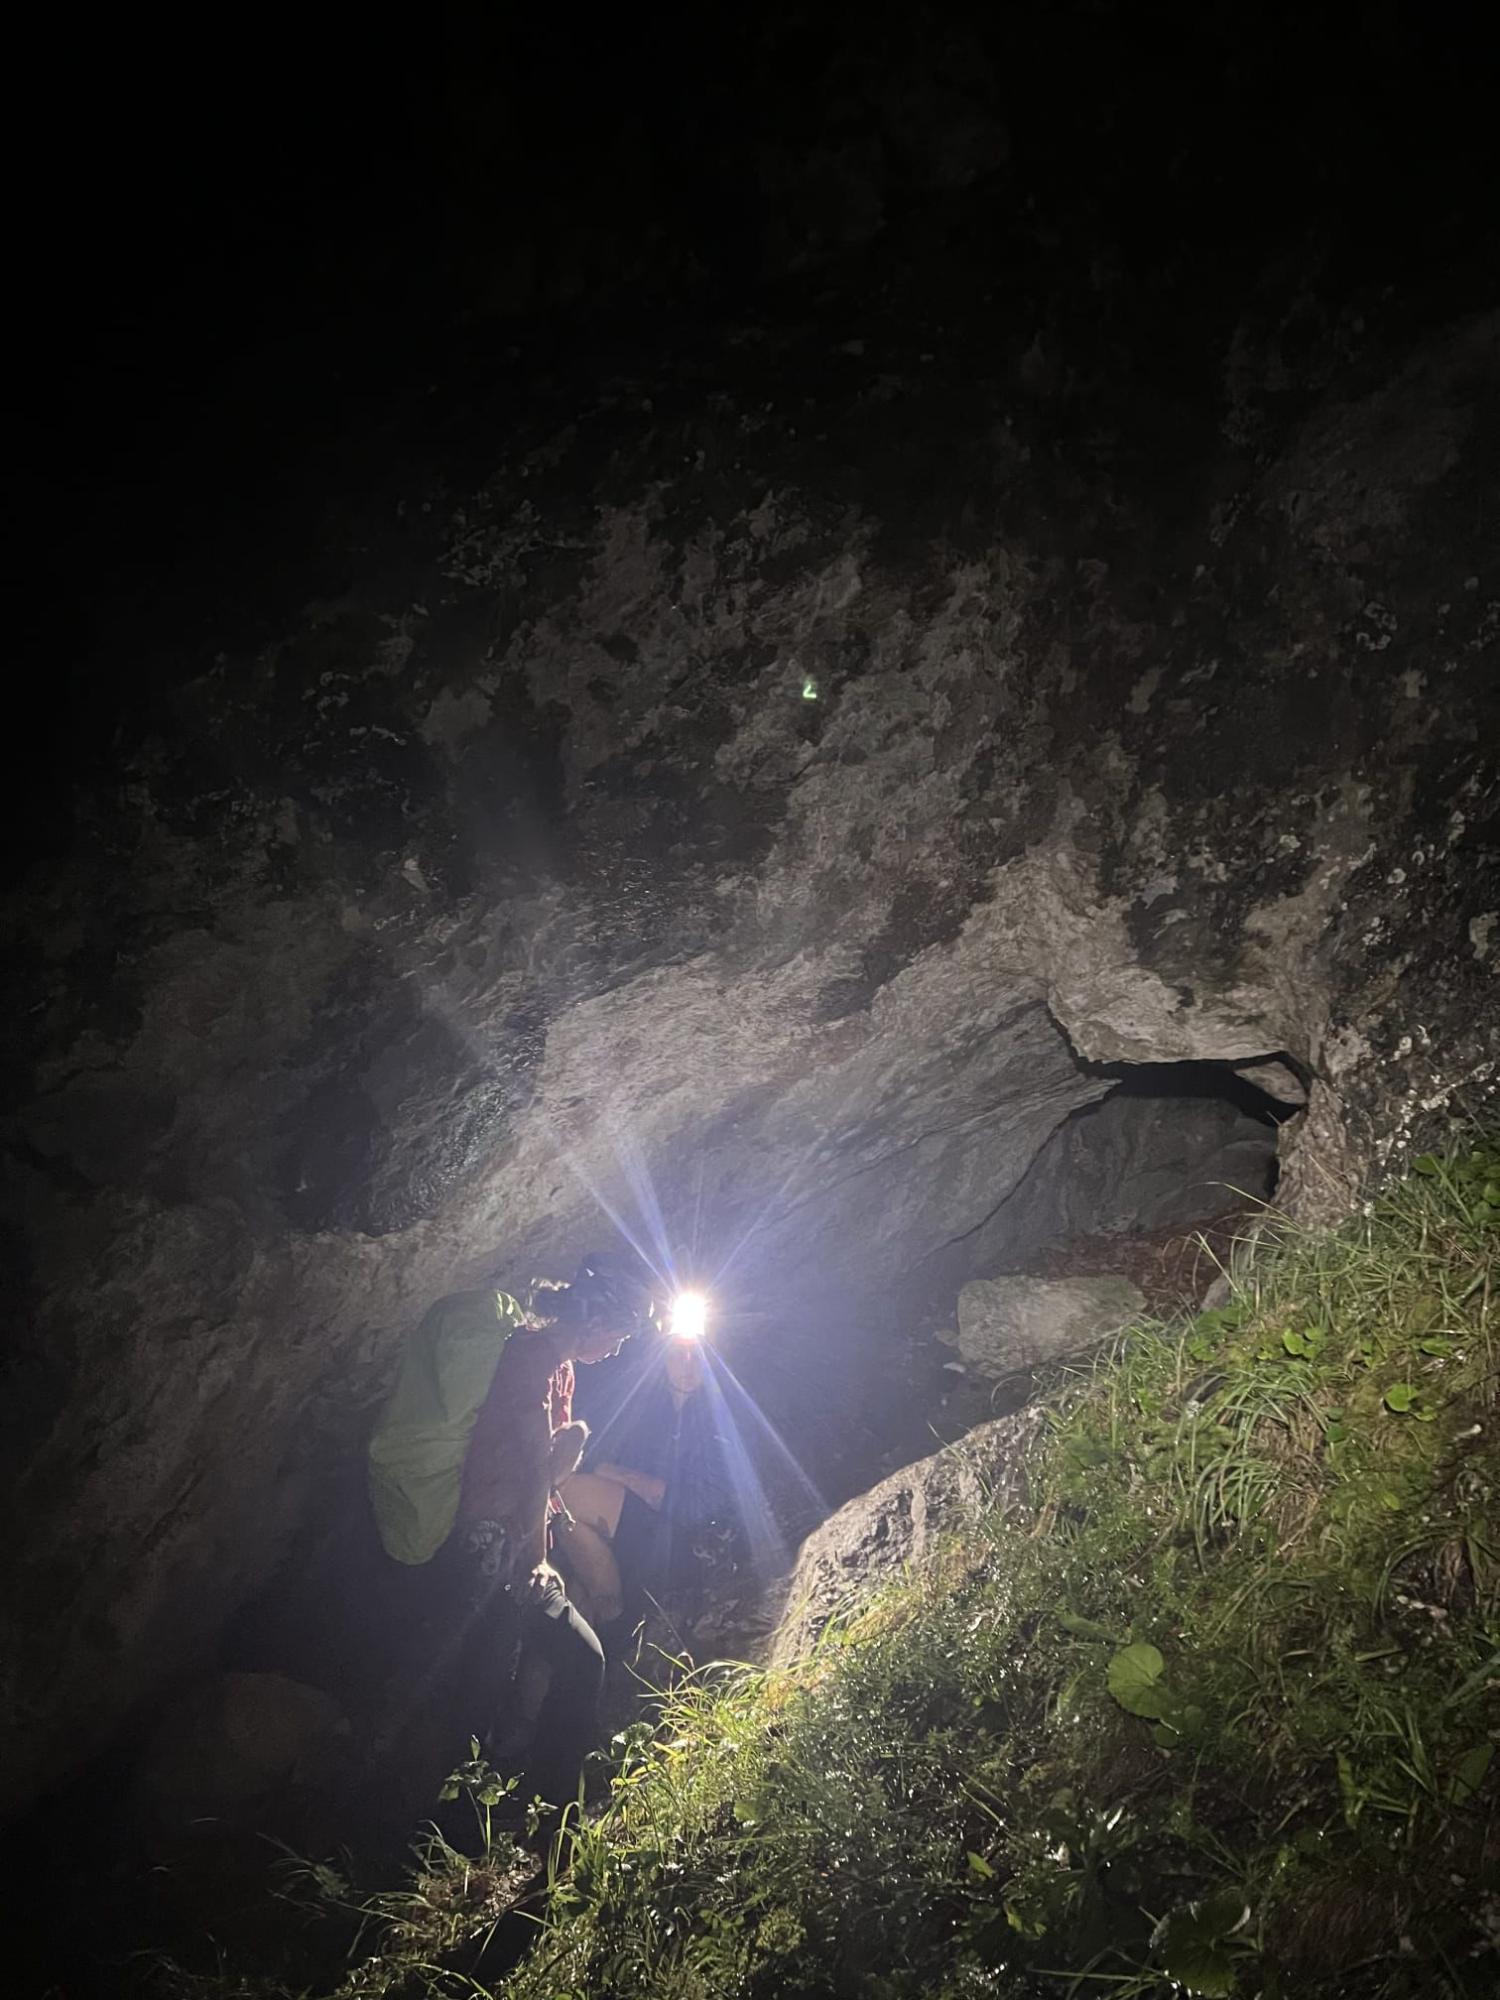 Lebensgefährliche Verhältnisse: Bergsteiger in der Nacht von der Rax gerettet